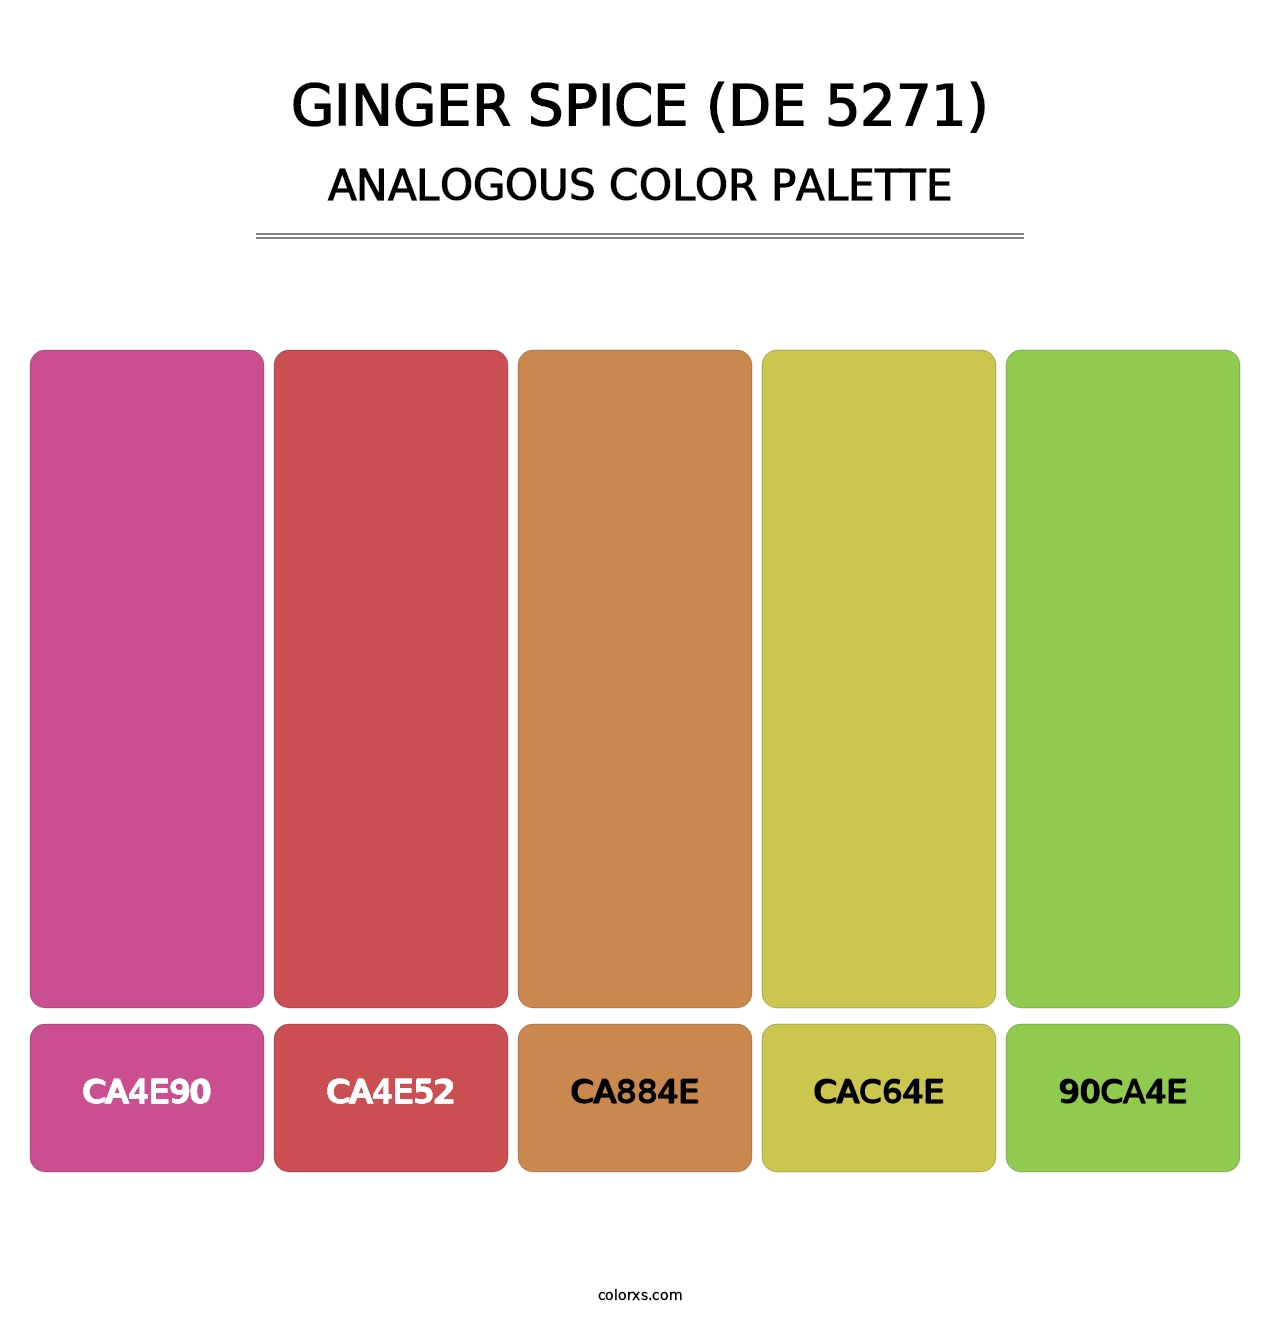 Ginger Spice (DE 5271) - Analogous Color Palette